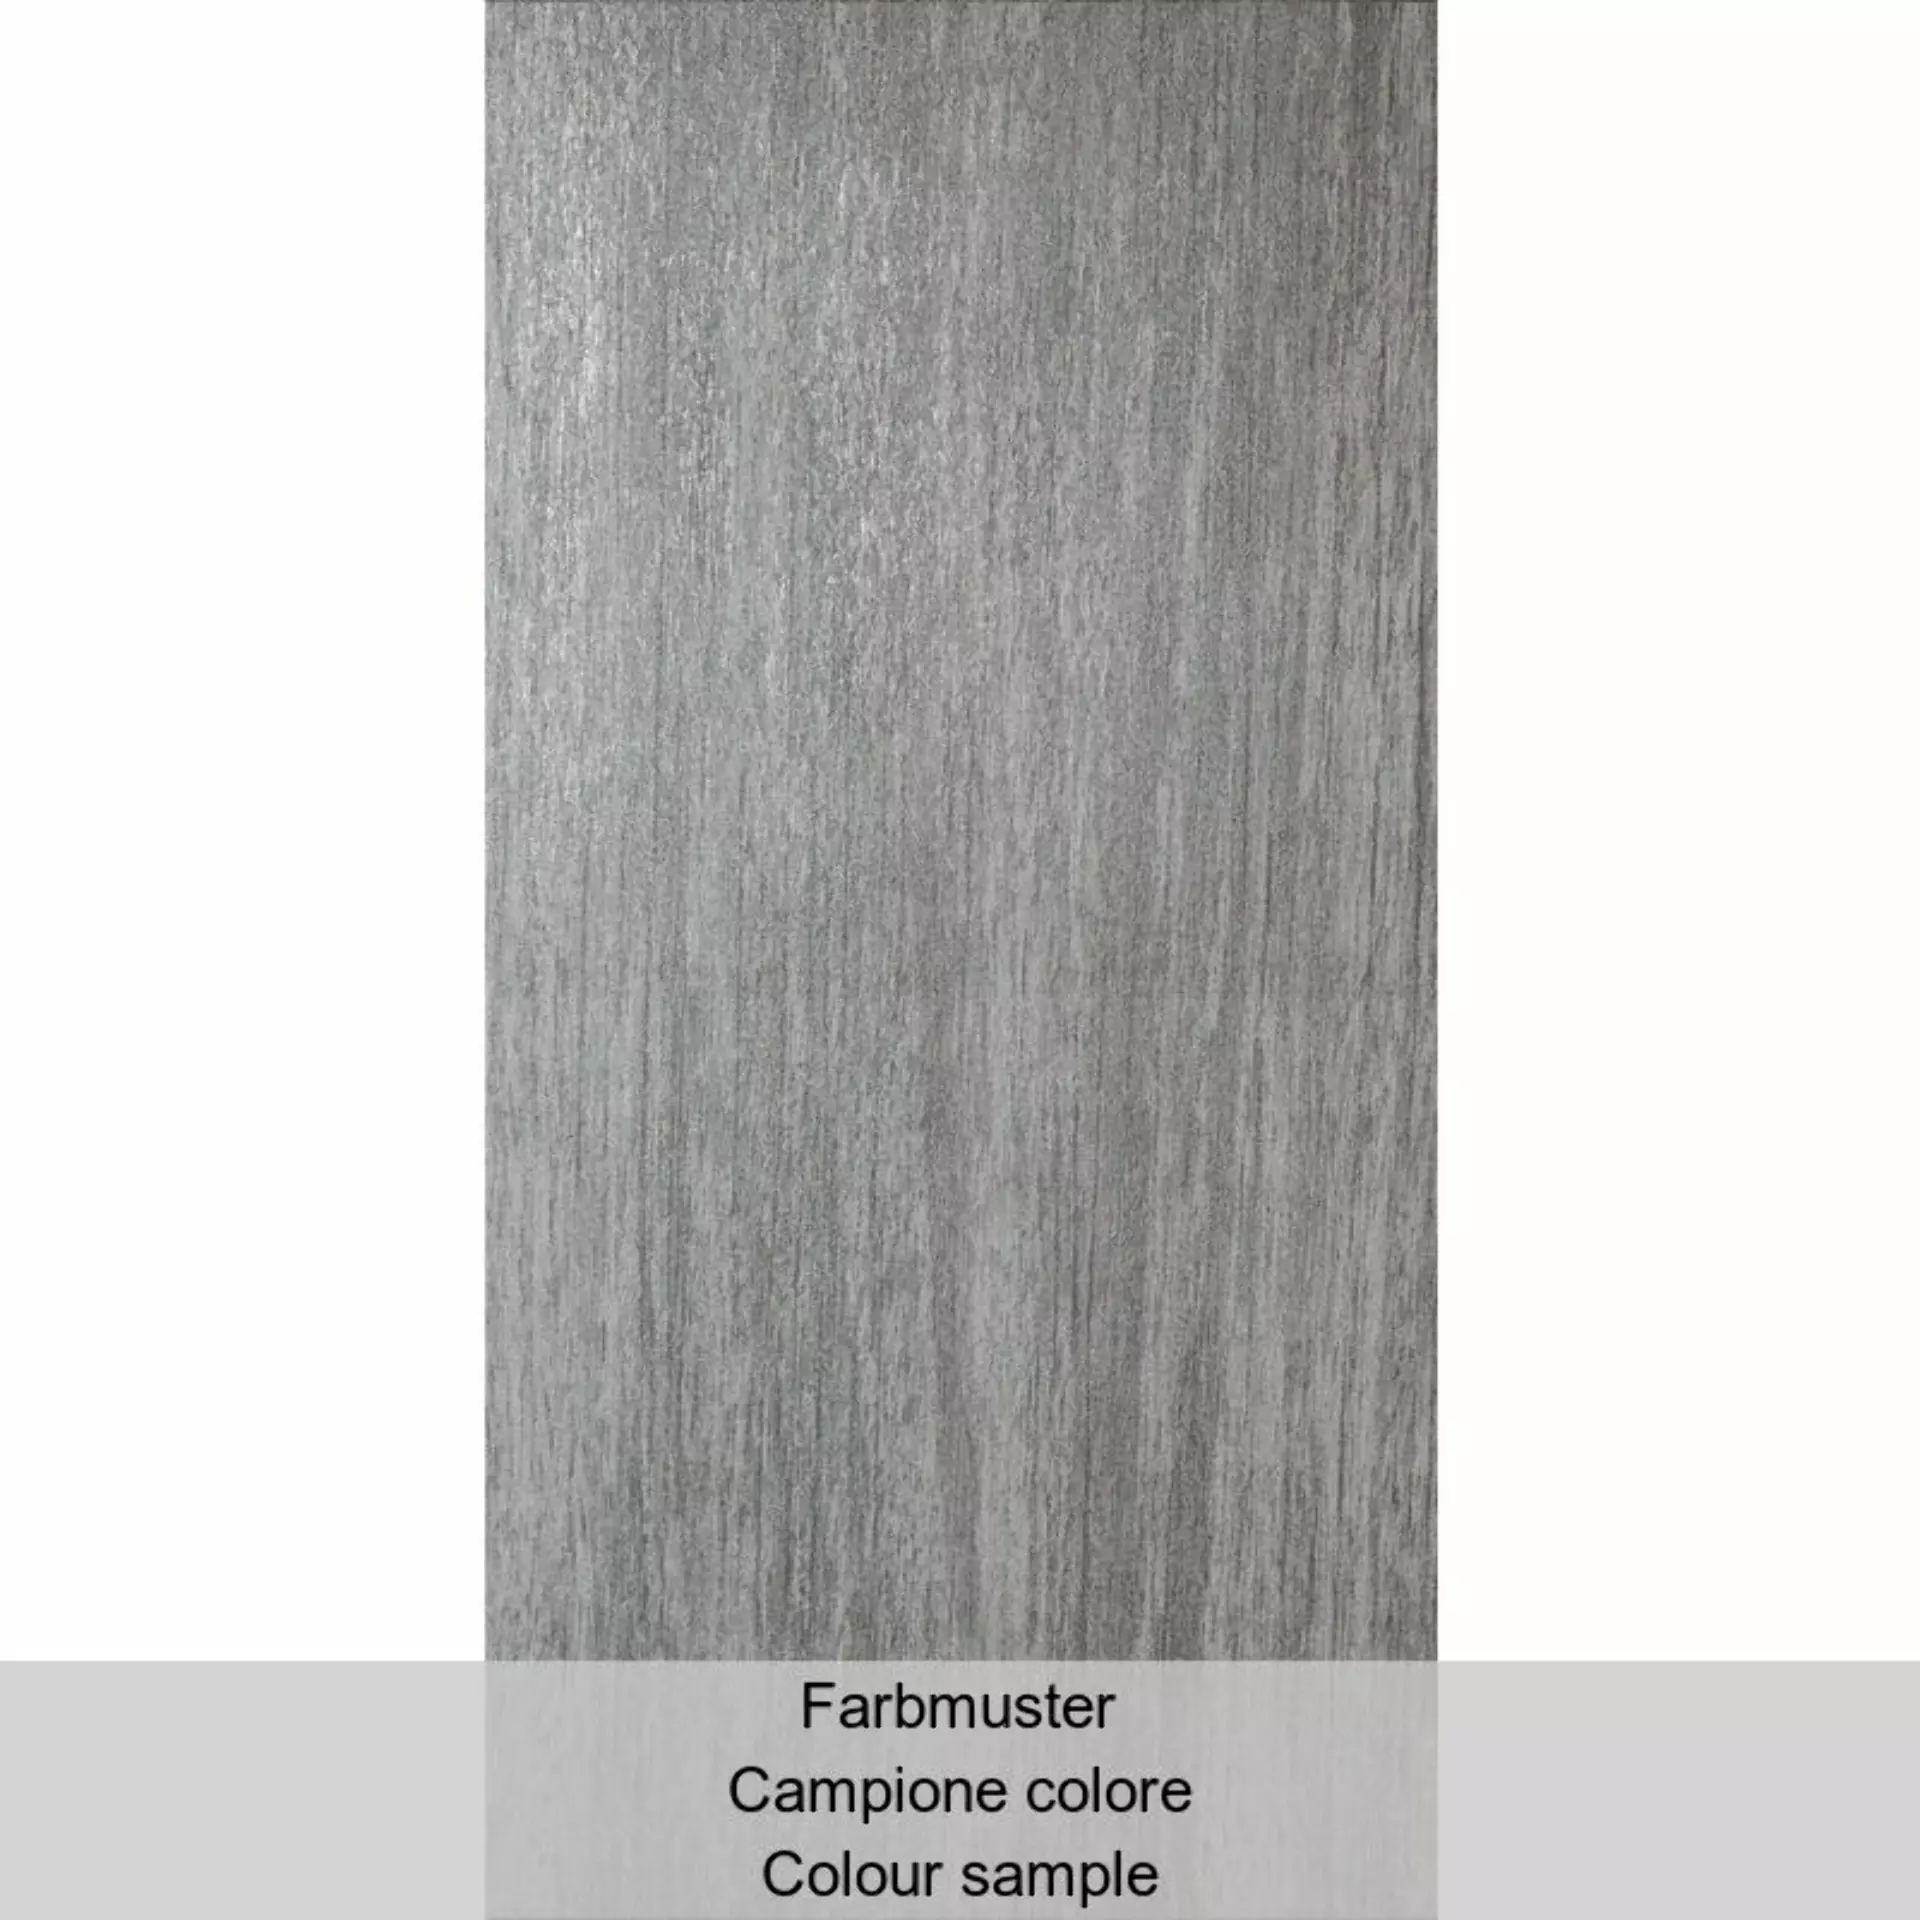 Casalgrande Metalwood Piombo Naturale – Matt 7790096 30x60cm rectified 9mm